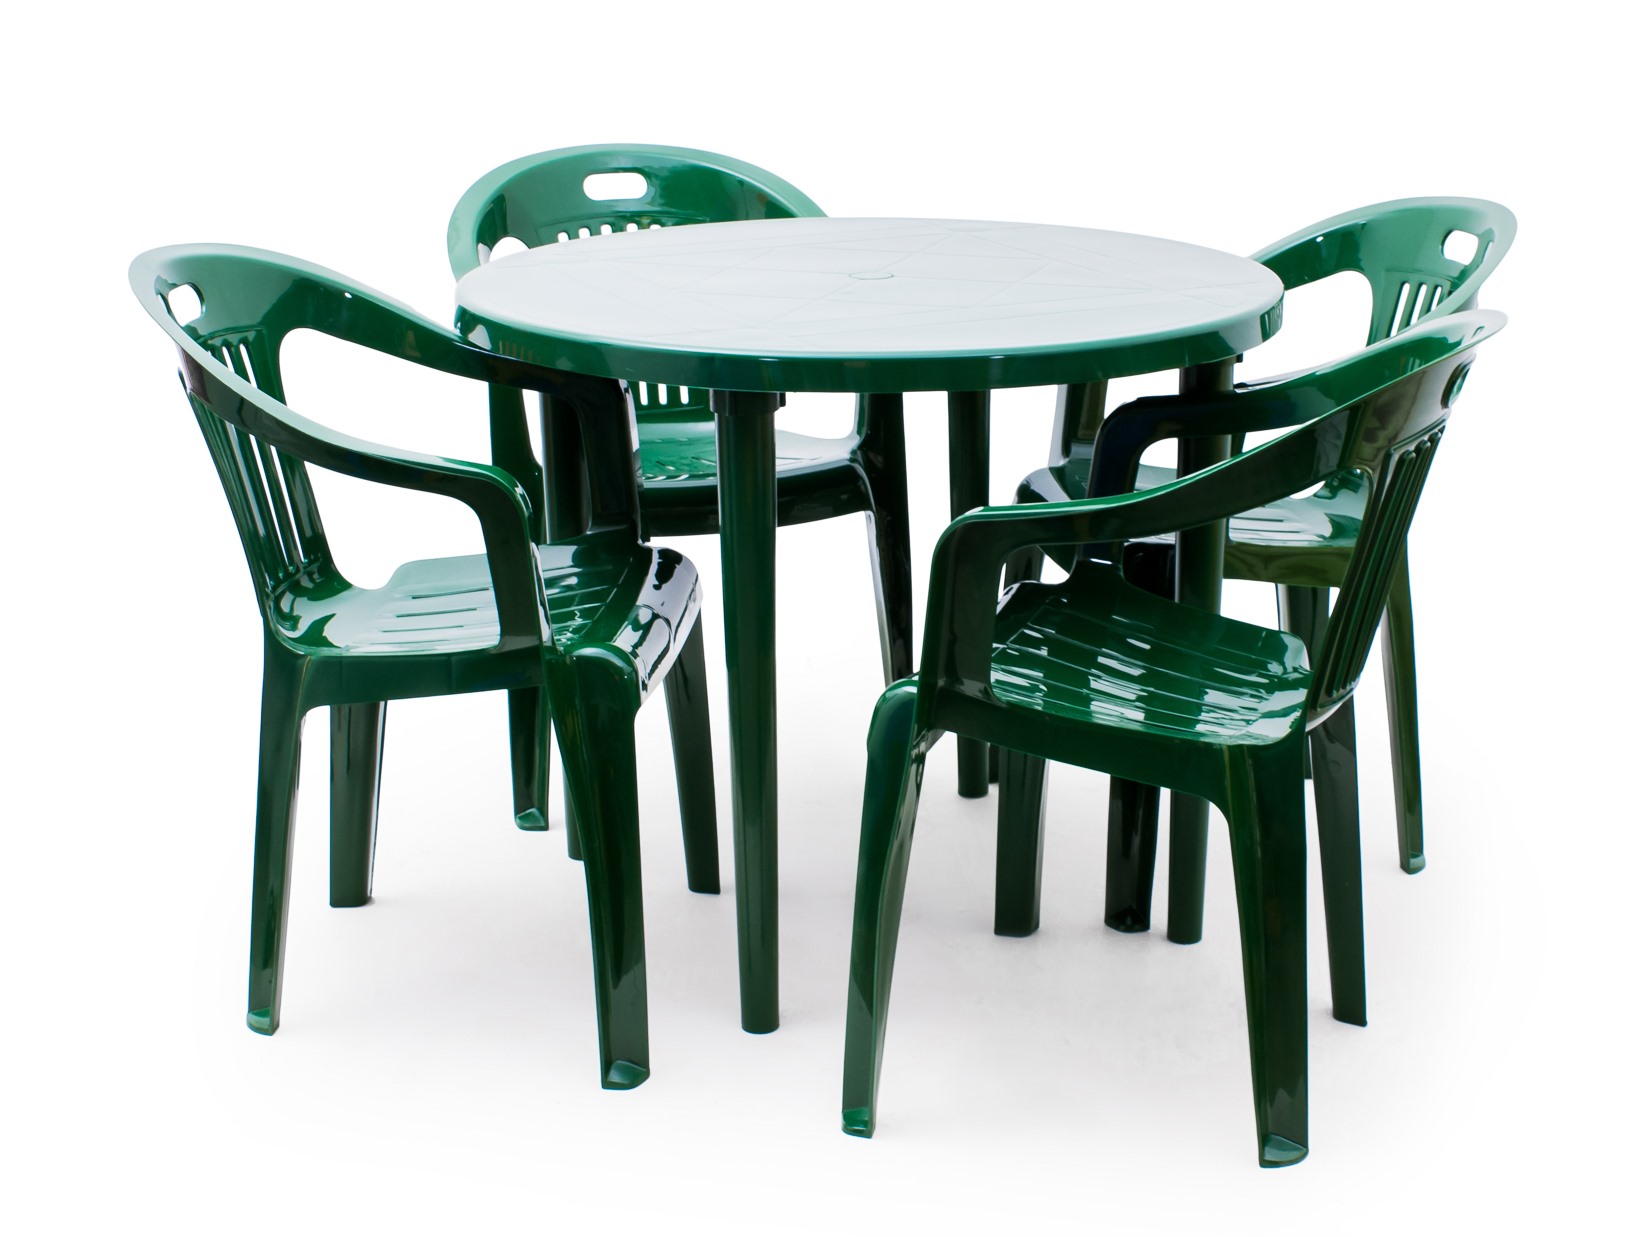 стулья для сада из пластика